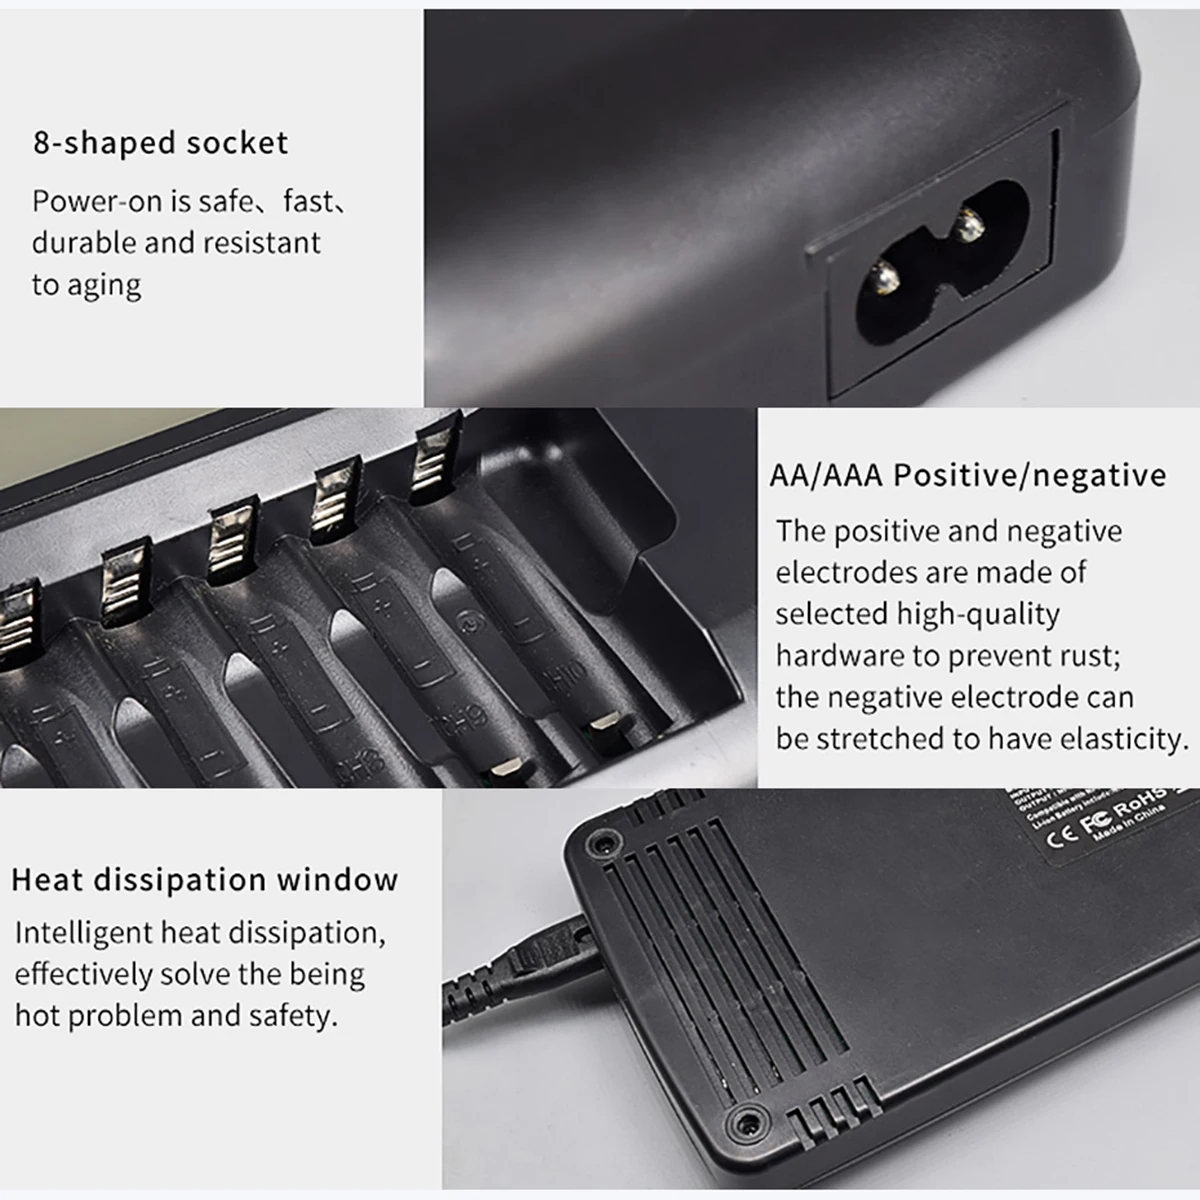 SOONHUA ЖК-дисплей Смарт Батарея Зарядное устройство 14-образными пазами с разрядкой Функция для AA AAA 9 никель-металл-гидридный аккумулятор с напряжением Li-Ion Перезаряжаемые батареи